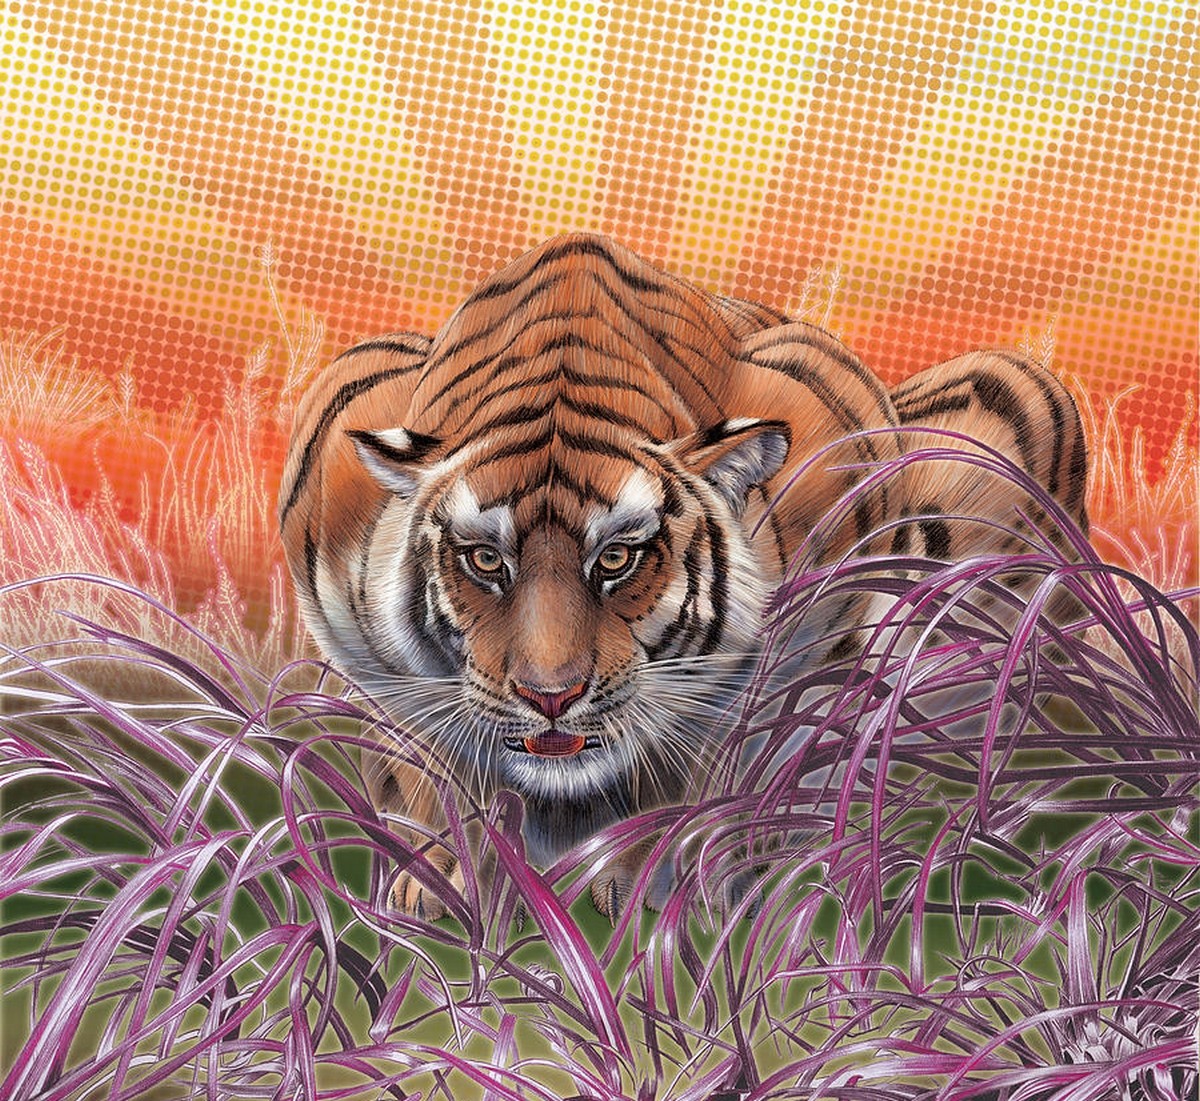 General 1200x1101 tiger animals digital art nature mammals artwork big cats